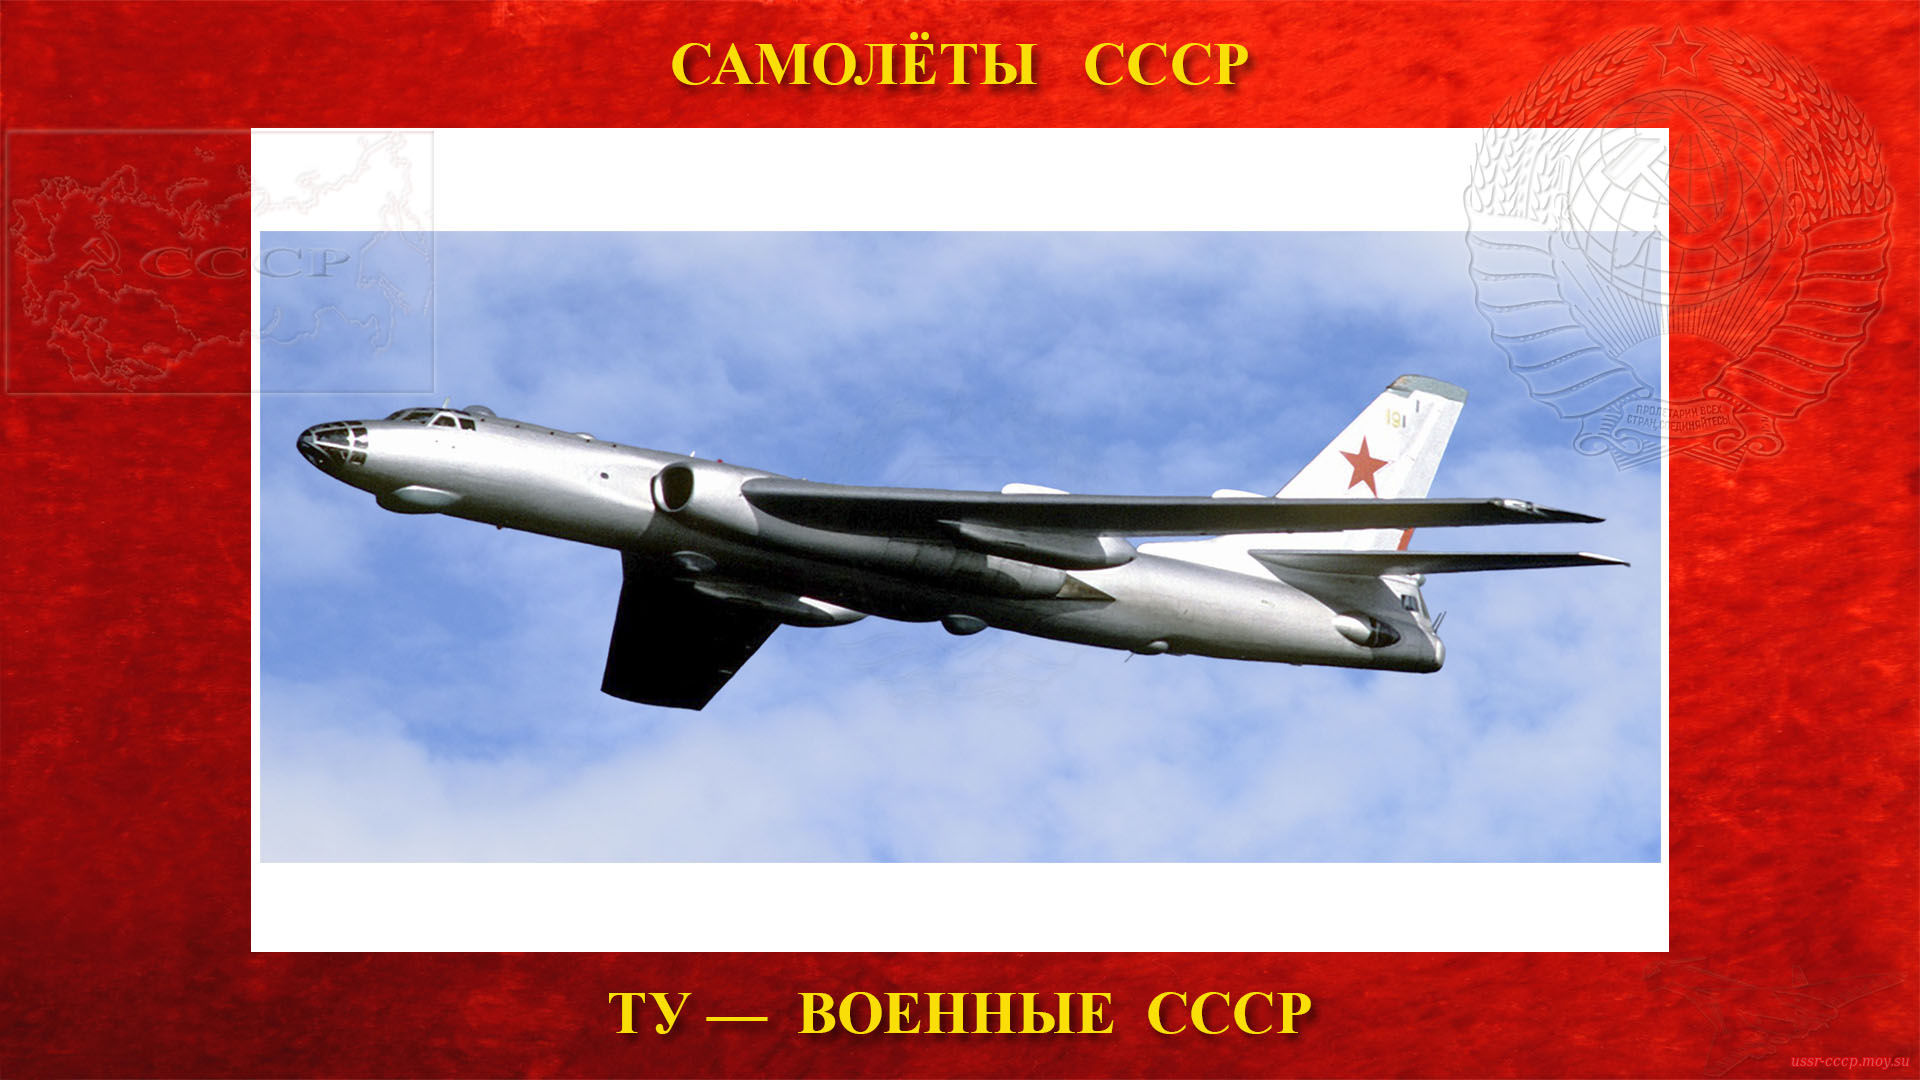 Ту-16 — Советский тяжёлый двухмоторный реактивный многоцелевой самолёт СССР (27.04.1952) (повествование)